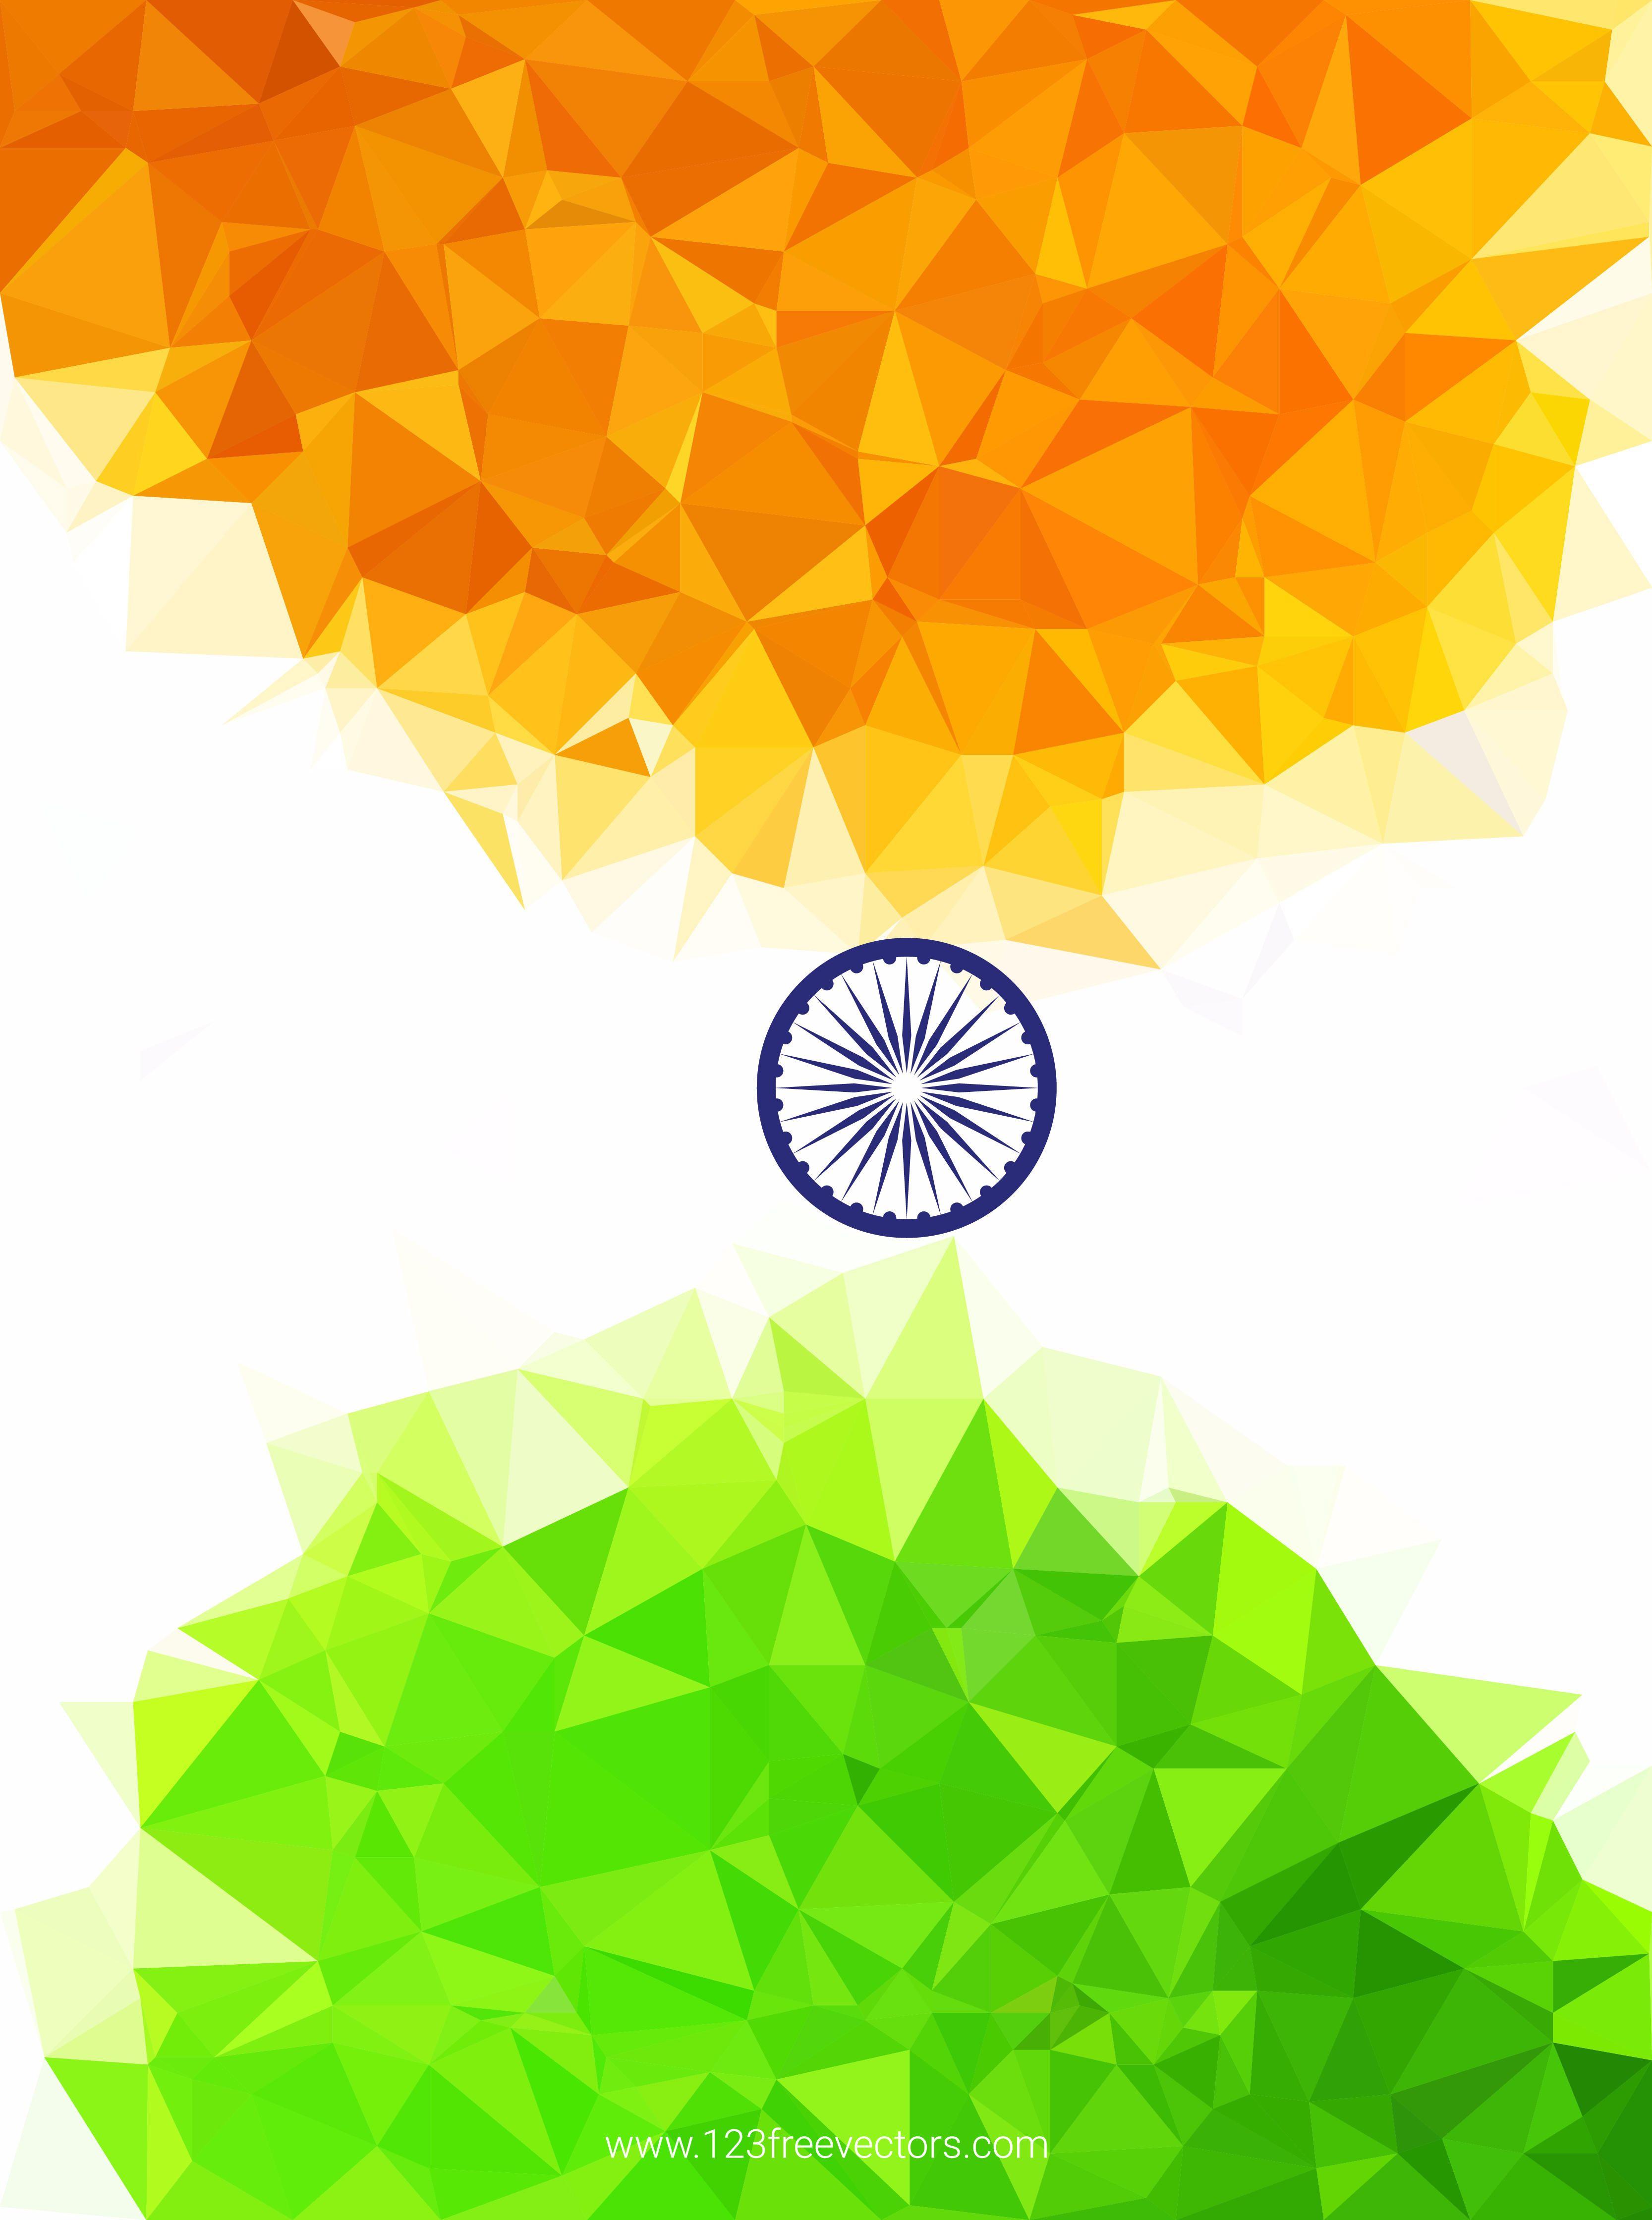 Indian Flag Vectors. Download Free Vector Art & Graphics